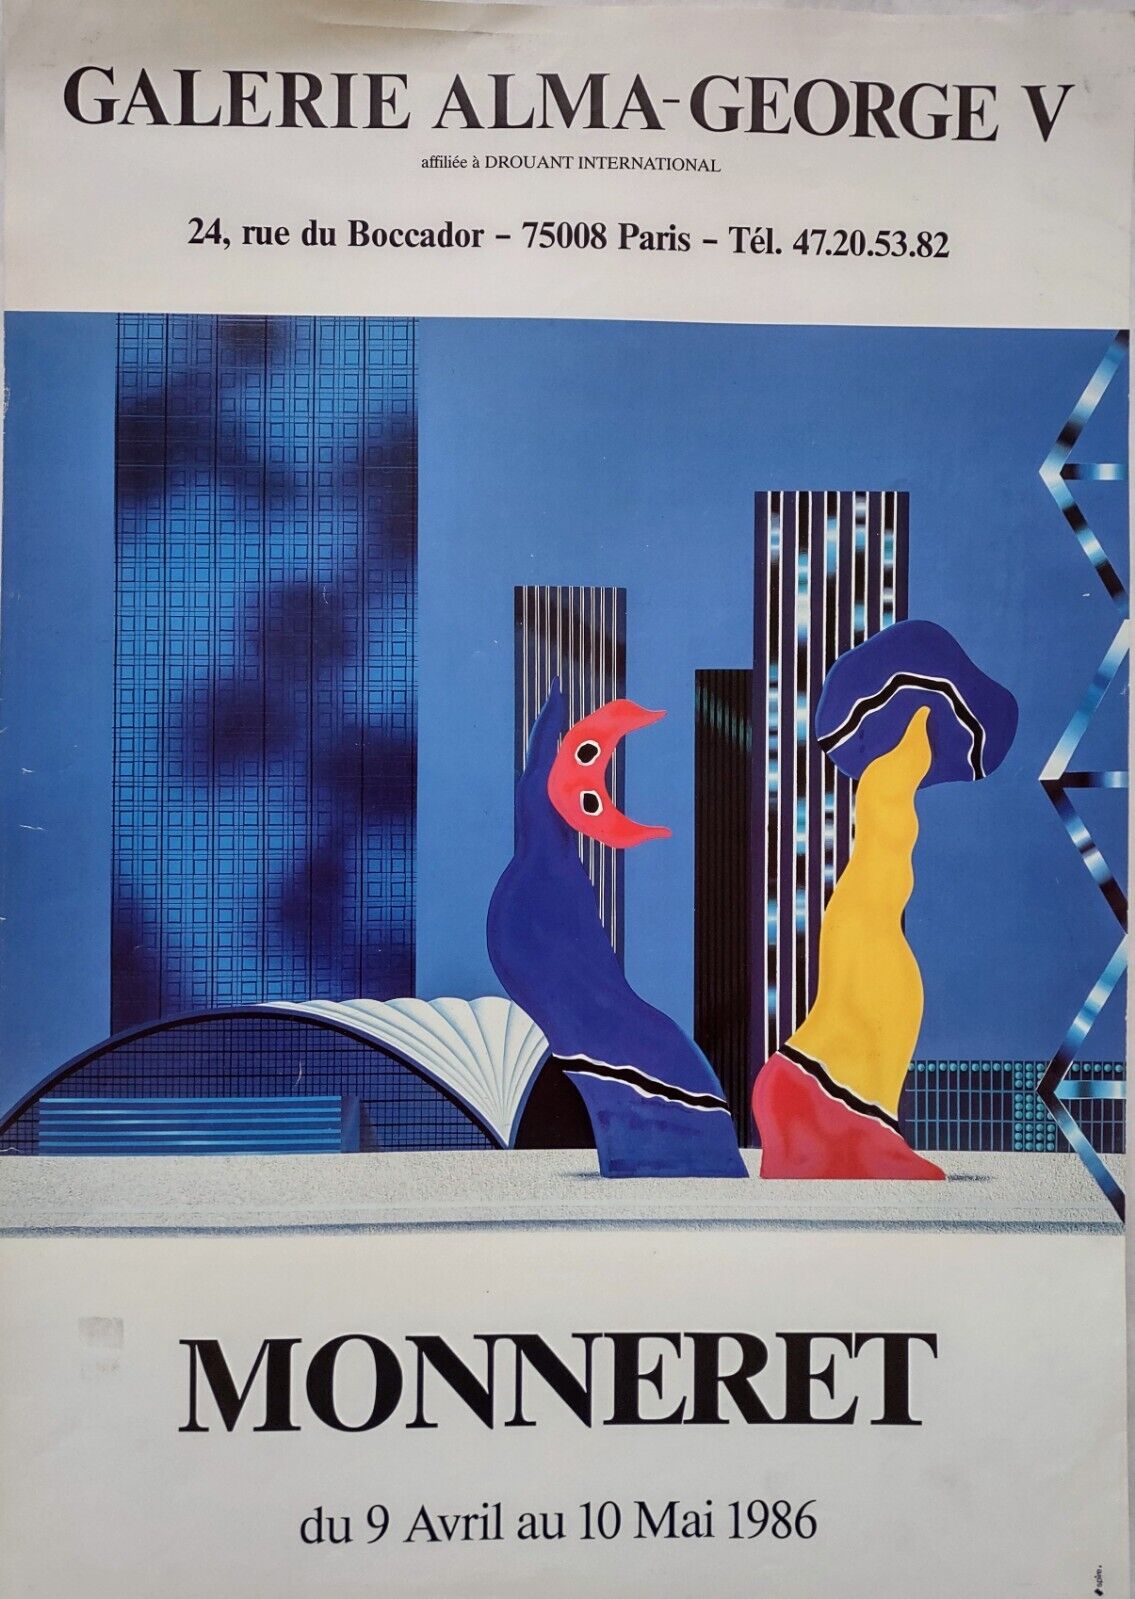 Vintage Paris Art Exhibit Poster 1986 MONNERET Galerie Alma-George V Beautiful